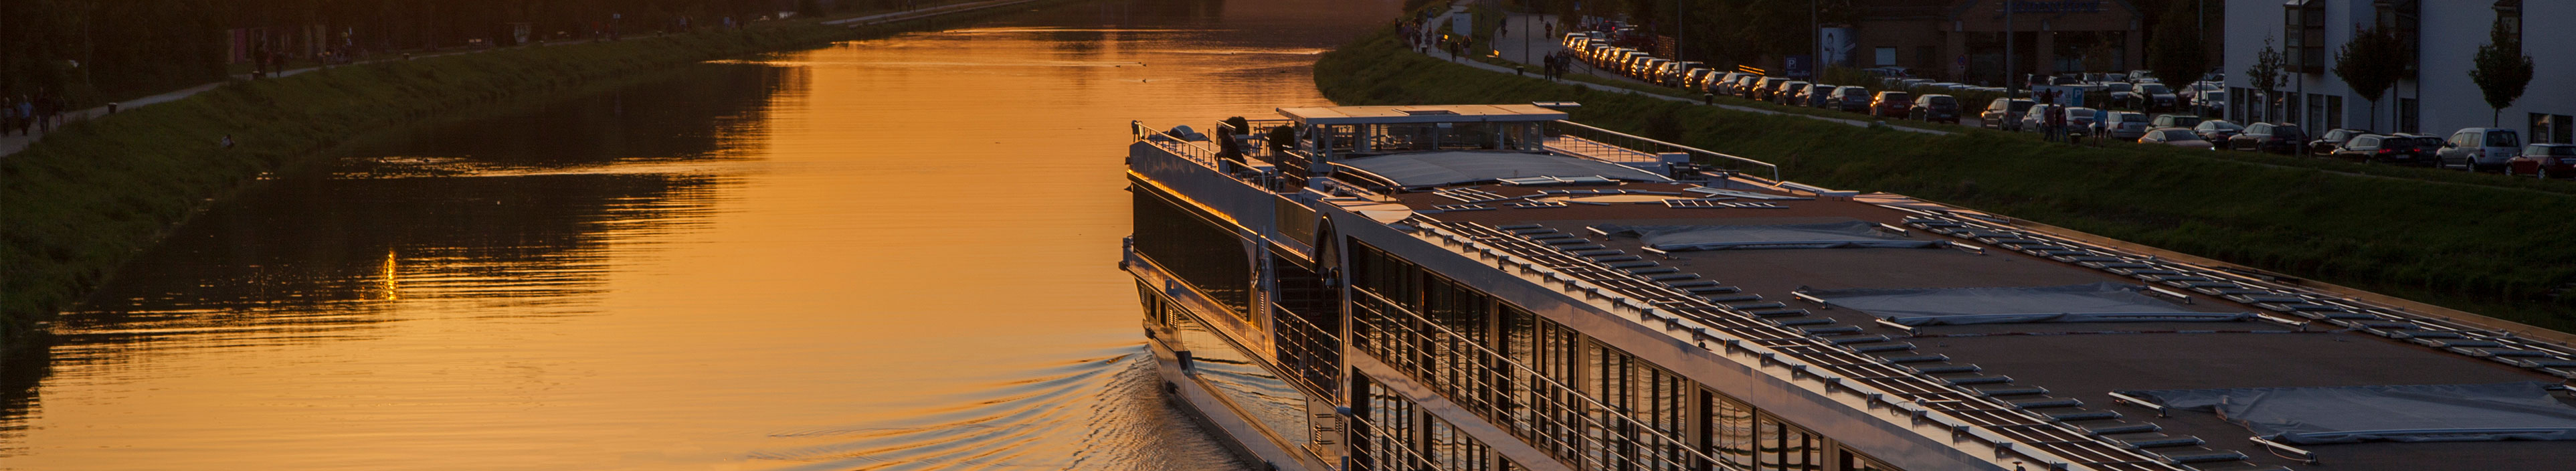 Sonnenuntergang während einer Flusskreuzfahrt auf der Donau